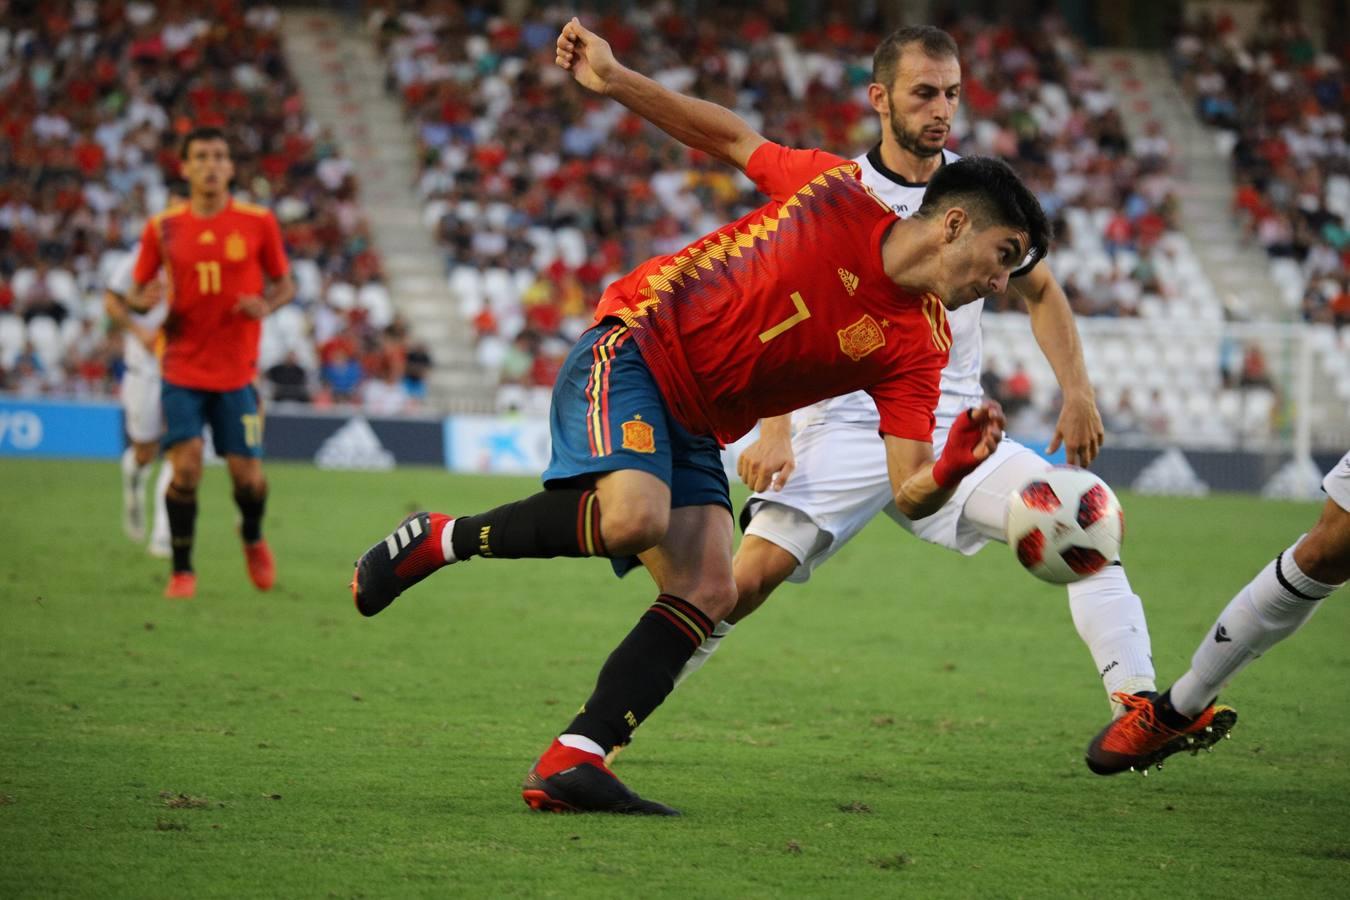 Selección de imágenes del España-Albania